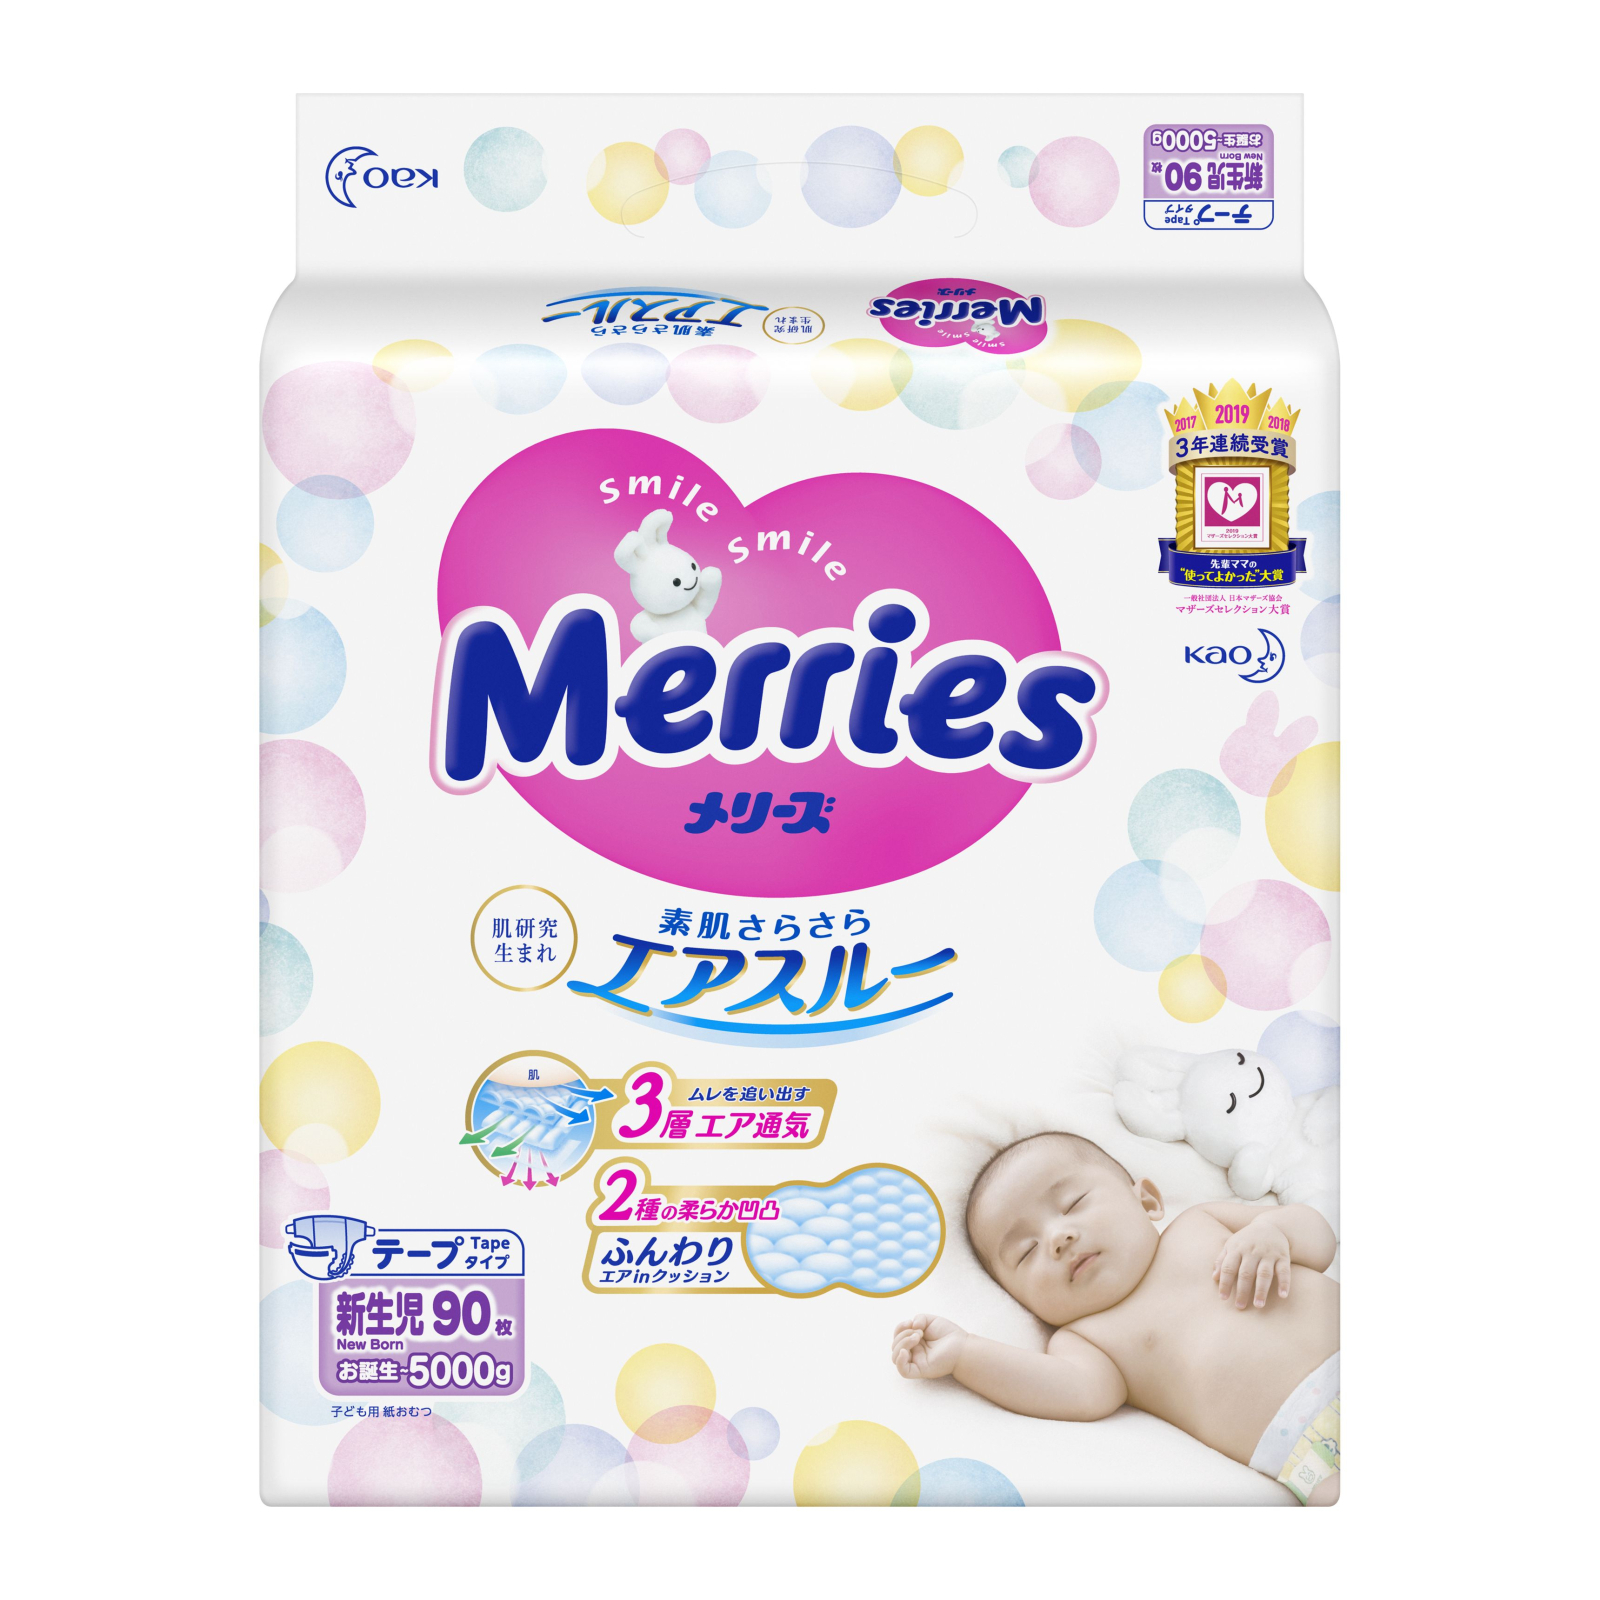 Подгузники Merries для новорожденных Merries NB 0-5 кг 24 шт (555015) изображение 2